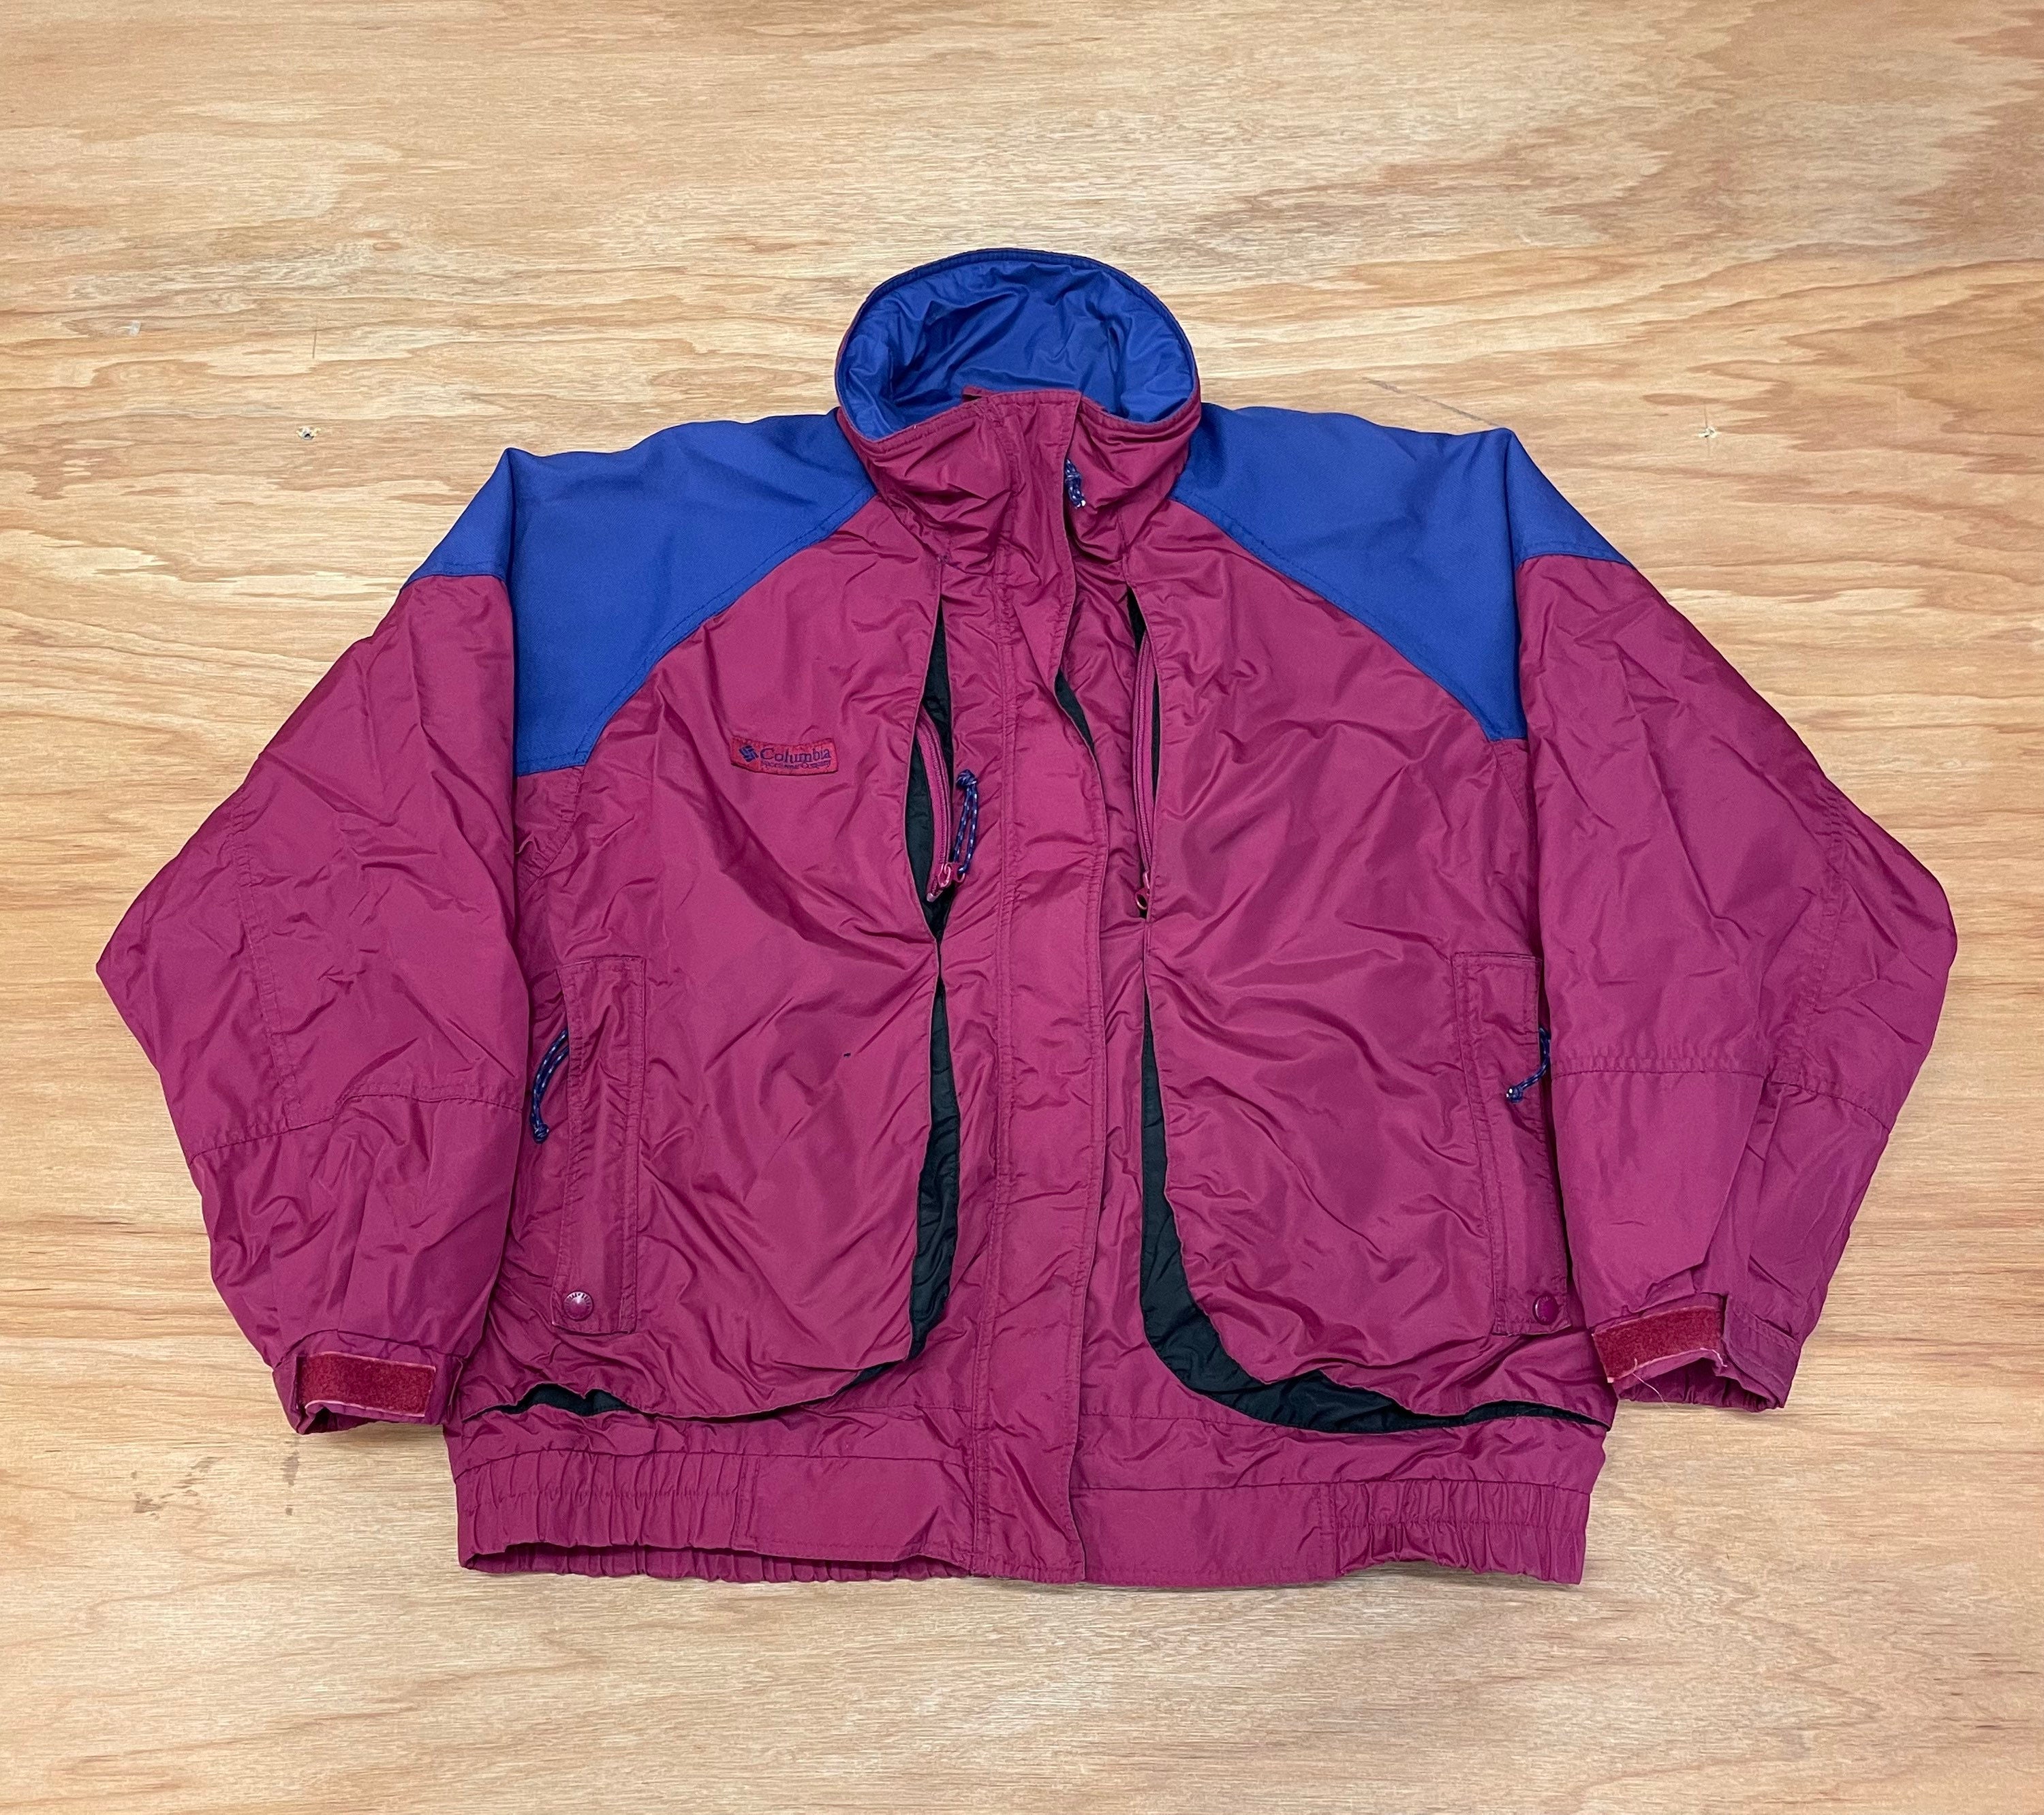 Vintage Columbia Sport Powder Keg Colourblock 1990s Ski Jacket | Etsy